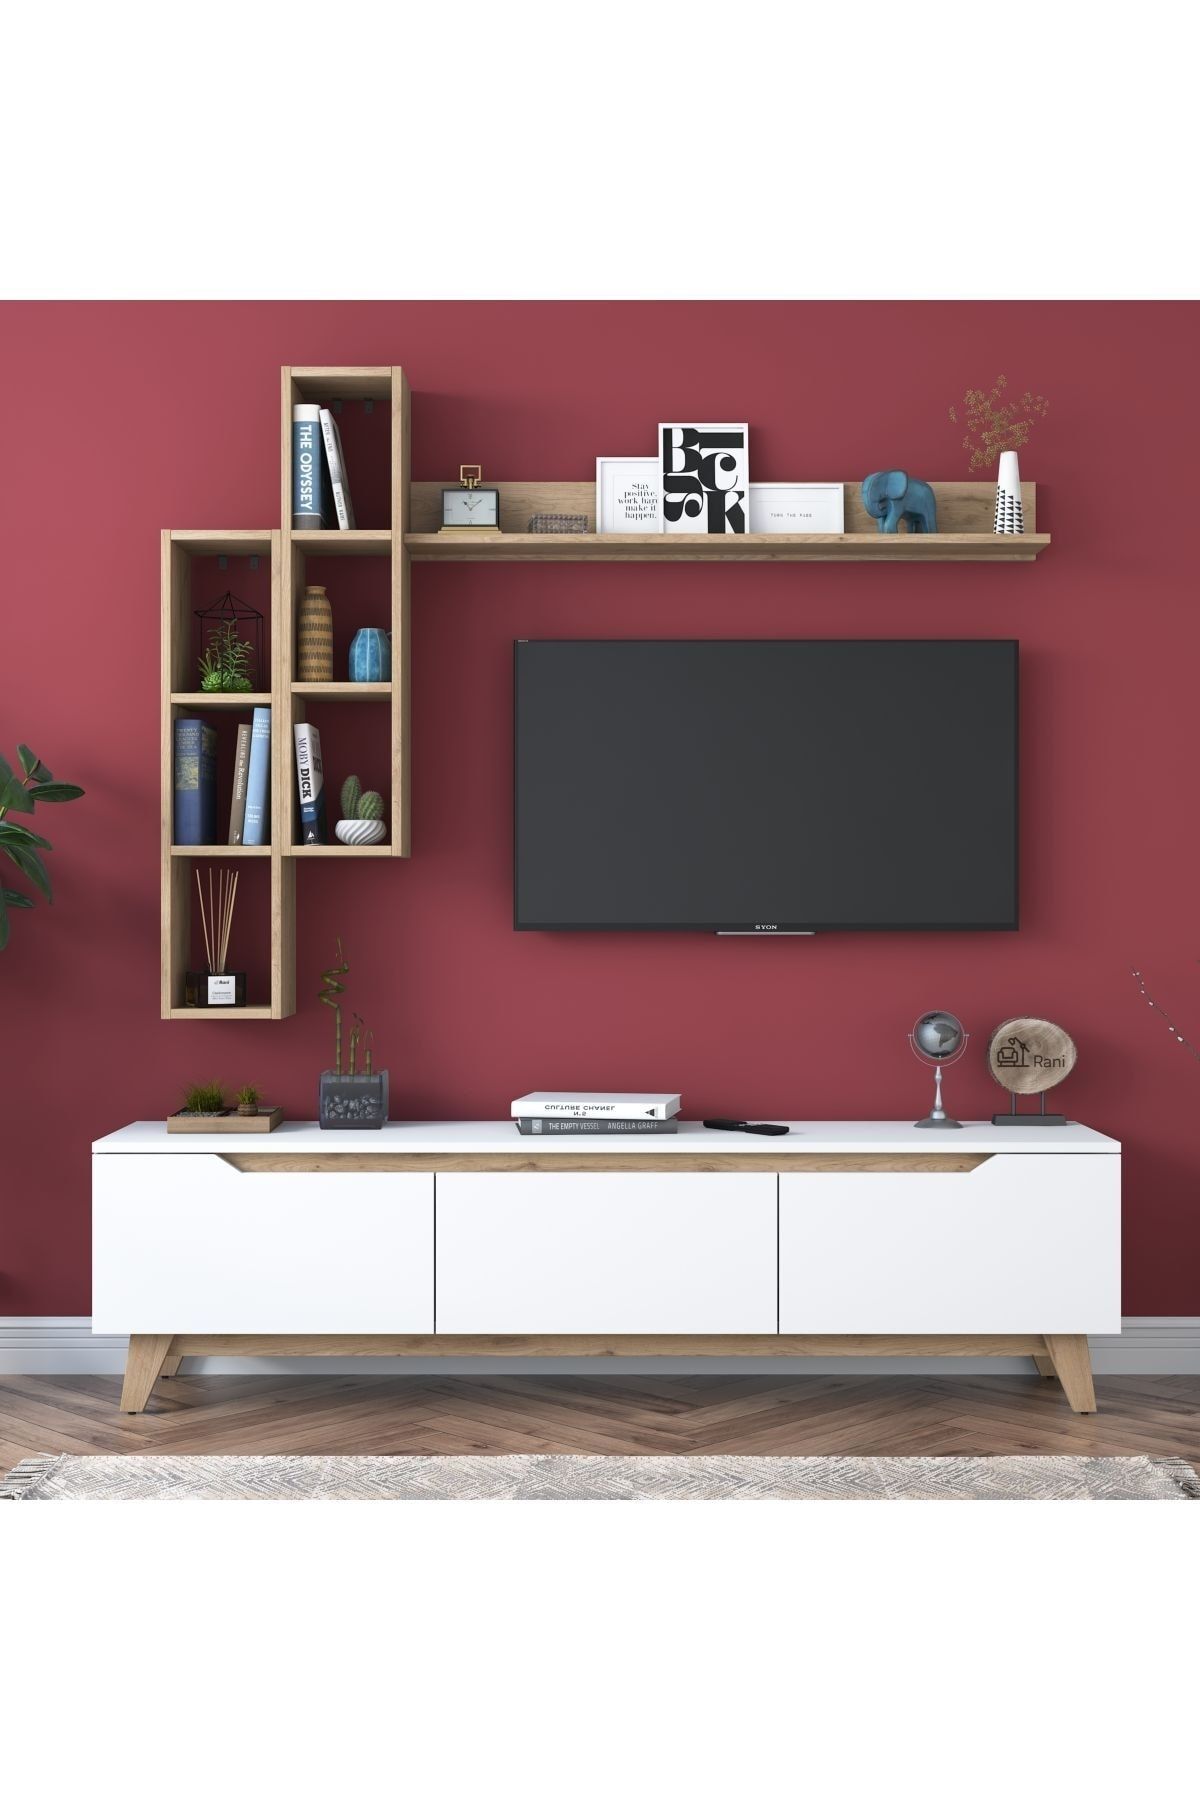 Rani Mobilya Rani D1 Tv Ünitesi Kitaplıklı Tv Sehpası Duvara Monte Raflı Modern Ayaklı Beyaz - Sepet Ceviz M16